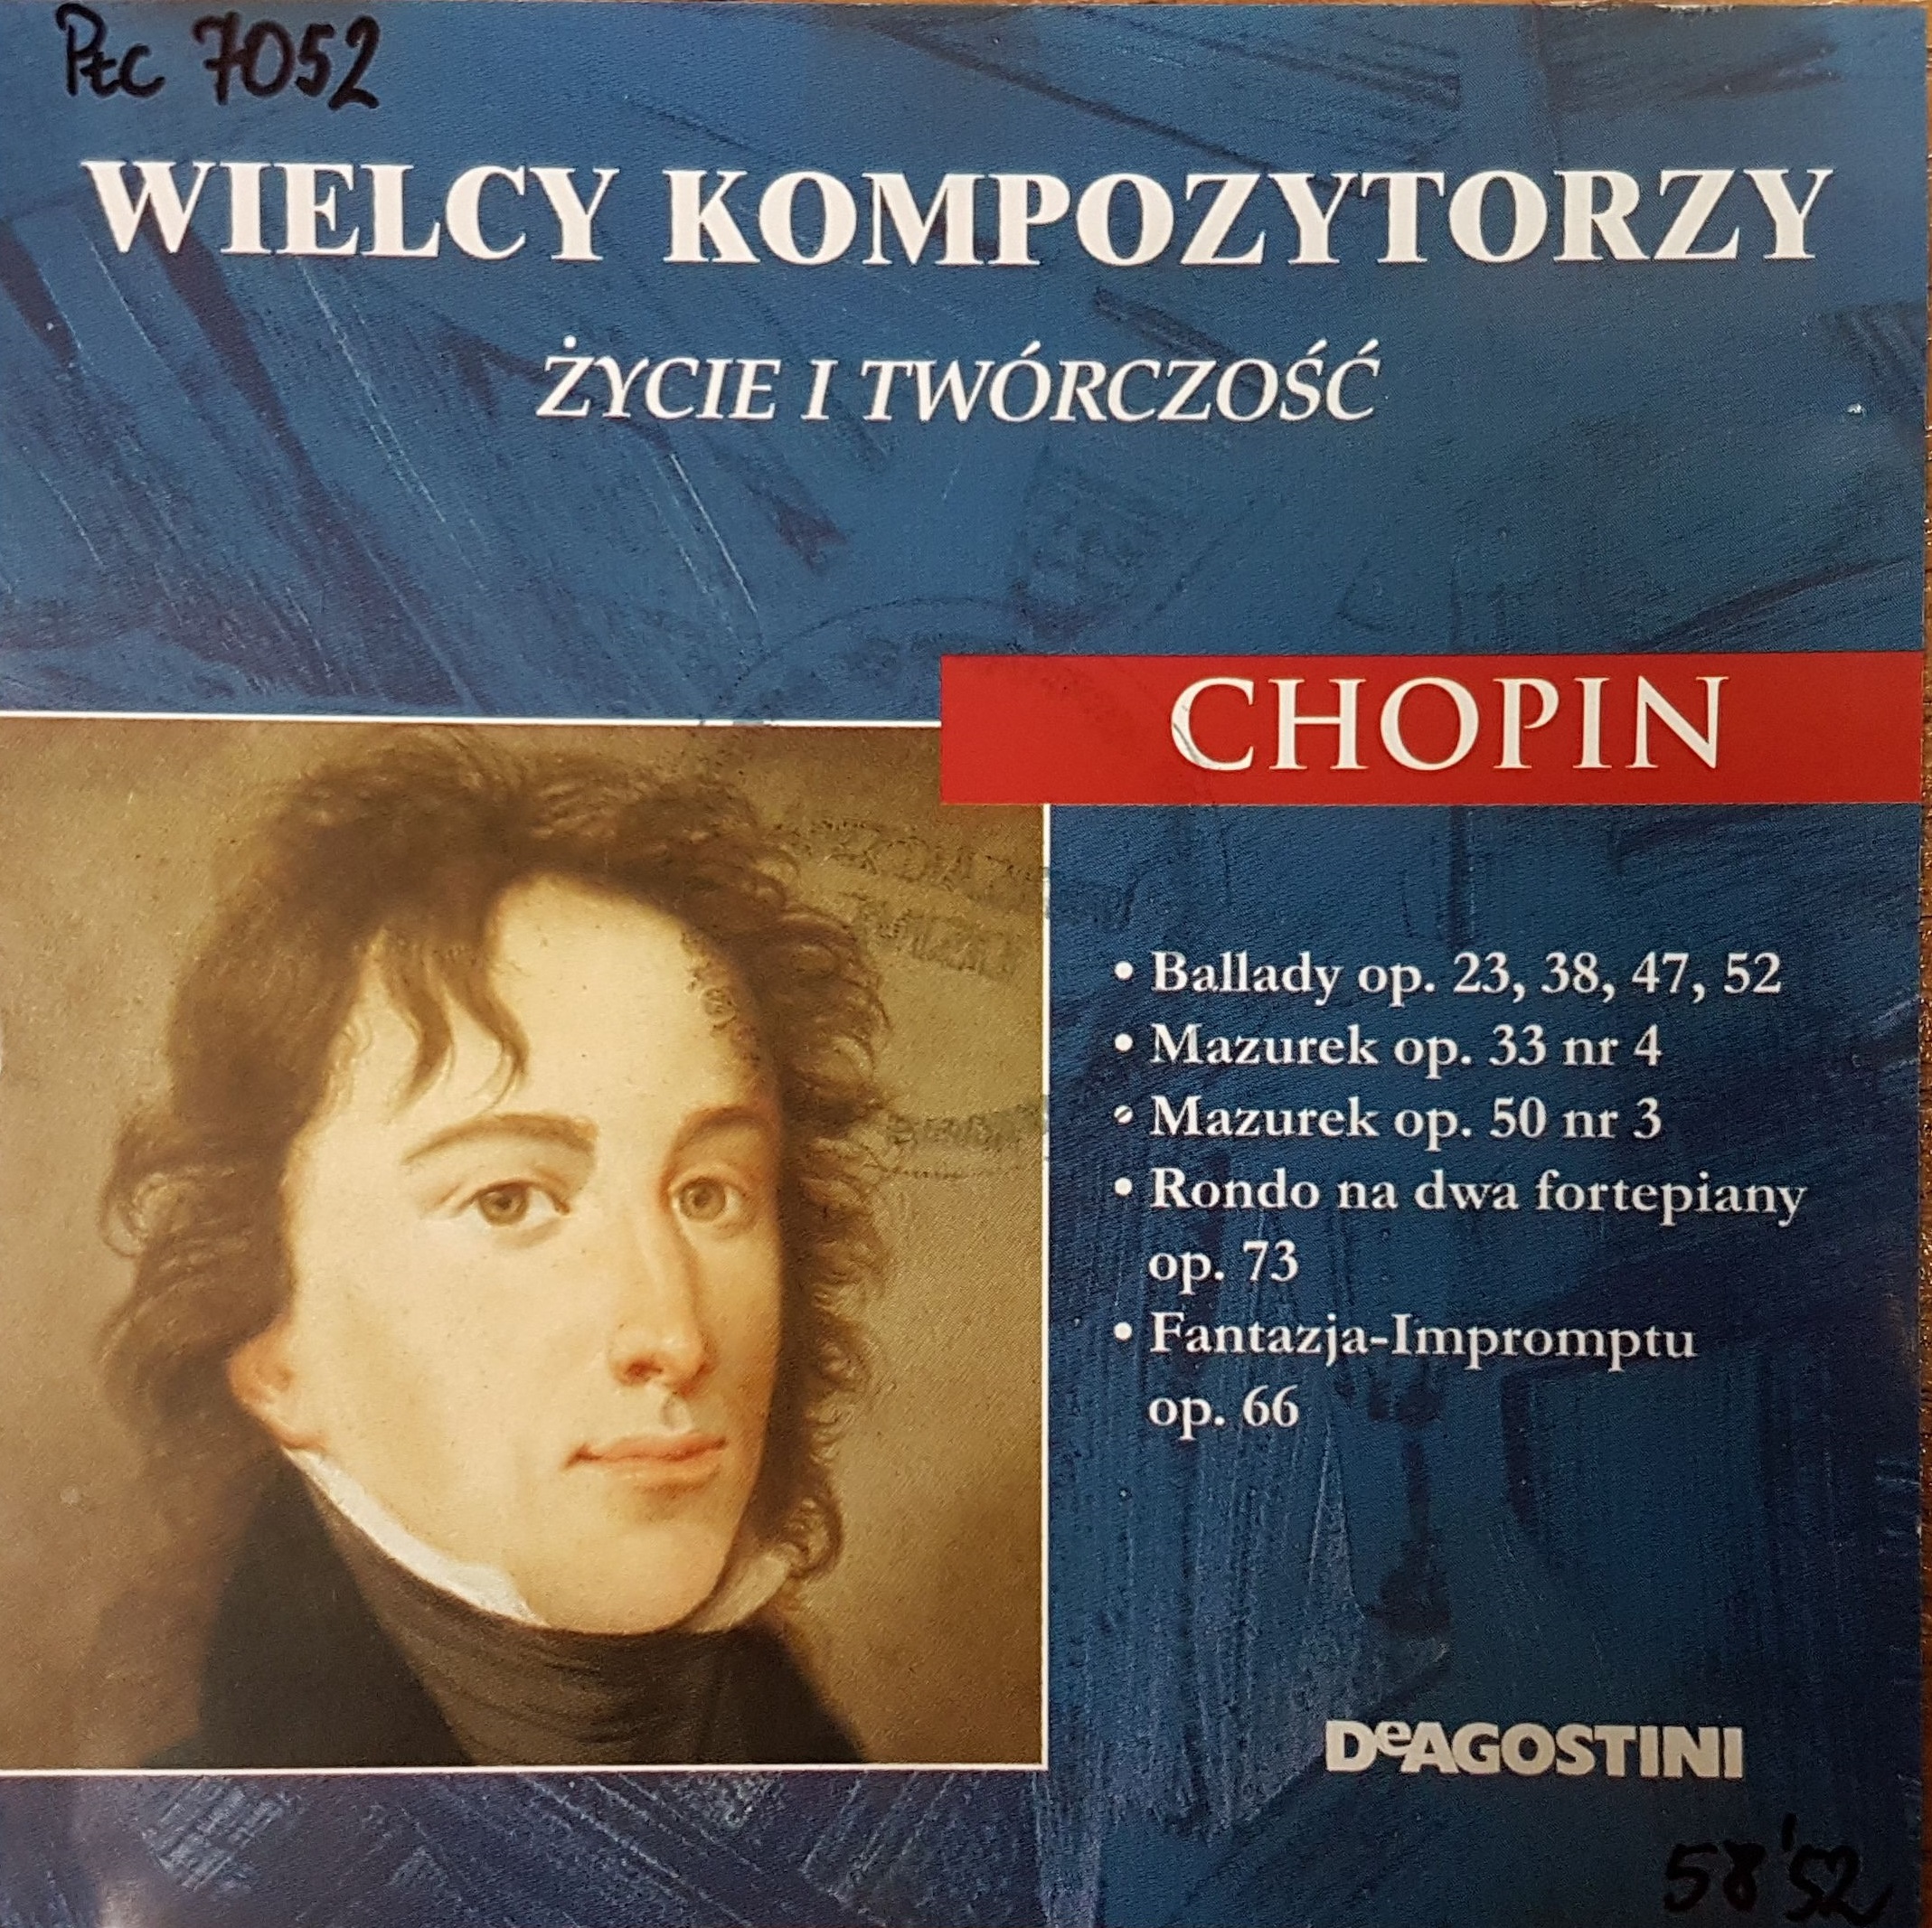 Chopin Fryderyk – Deagostini 1